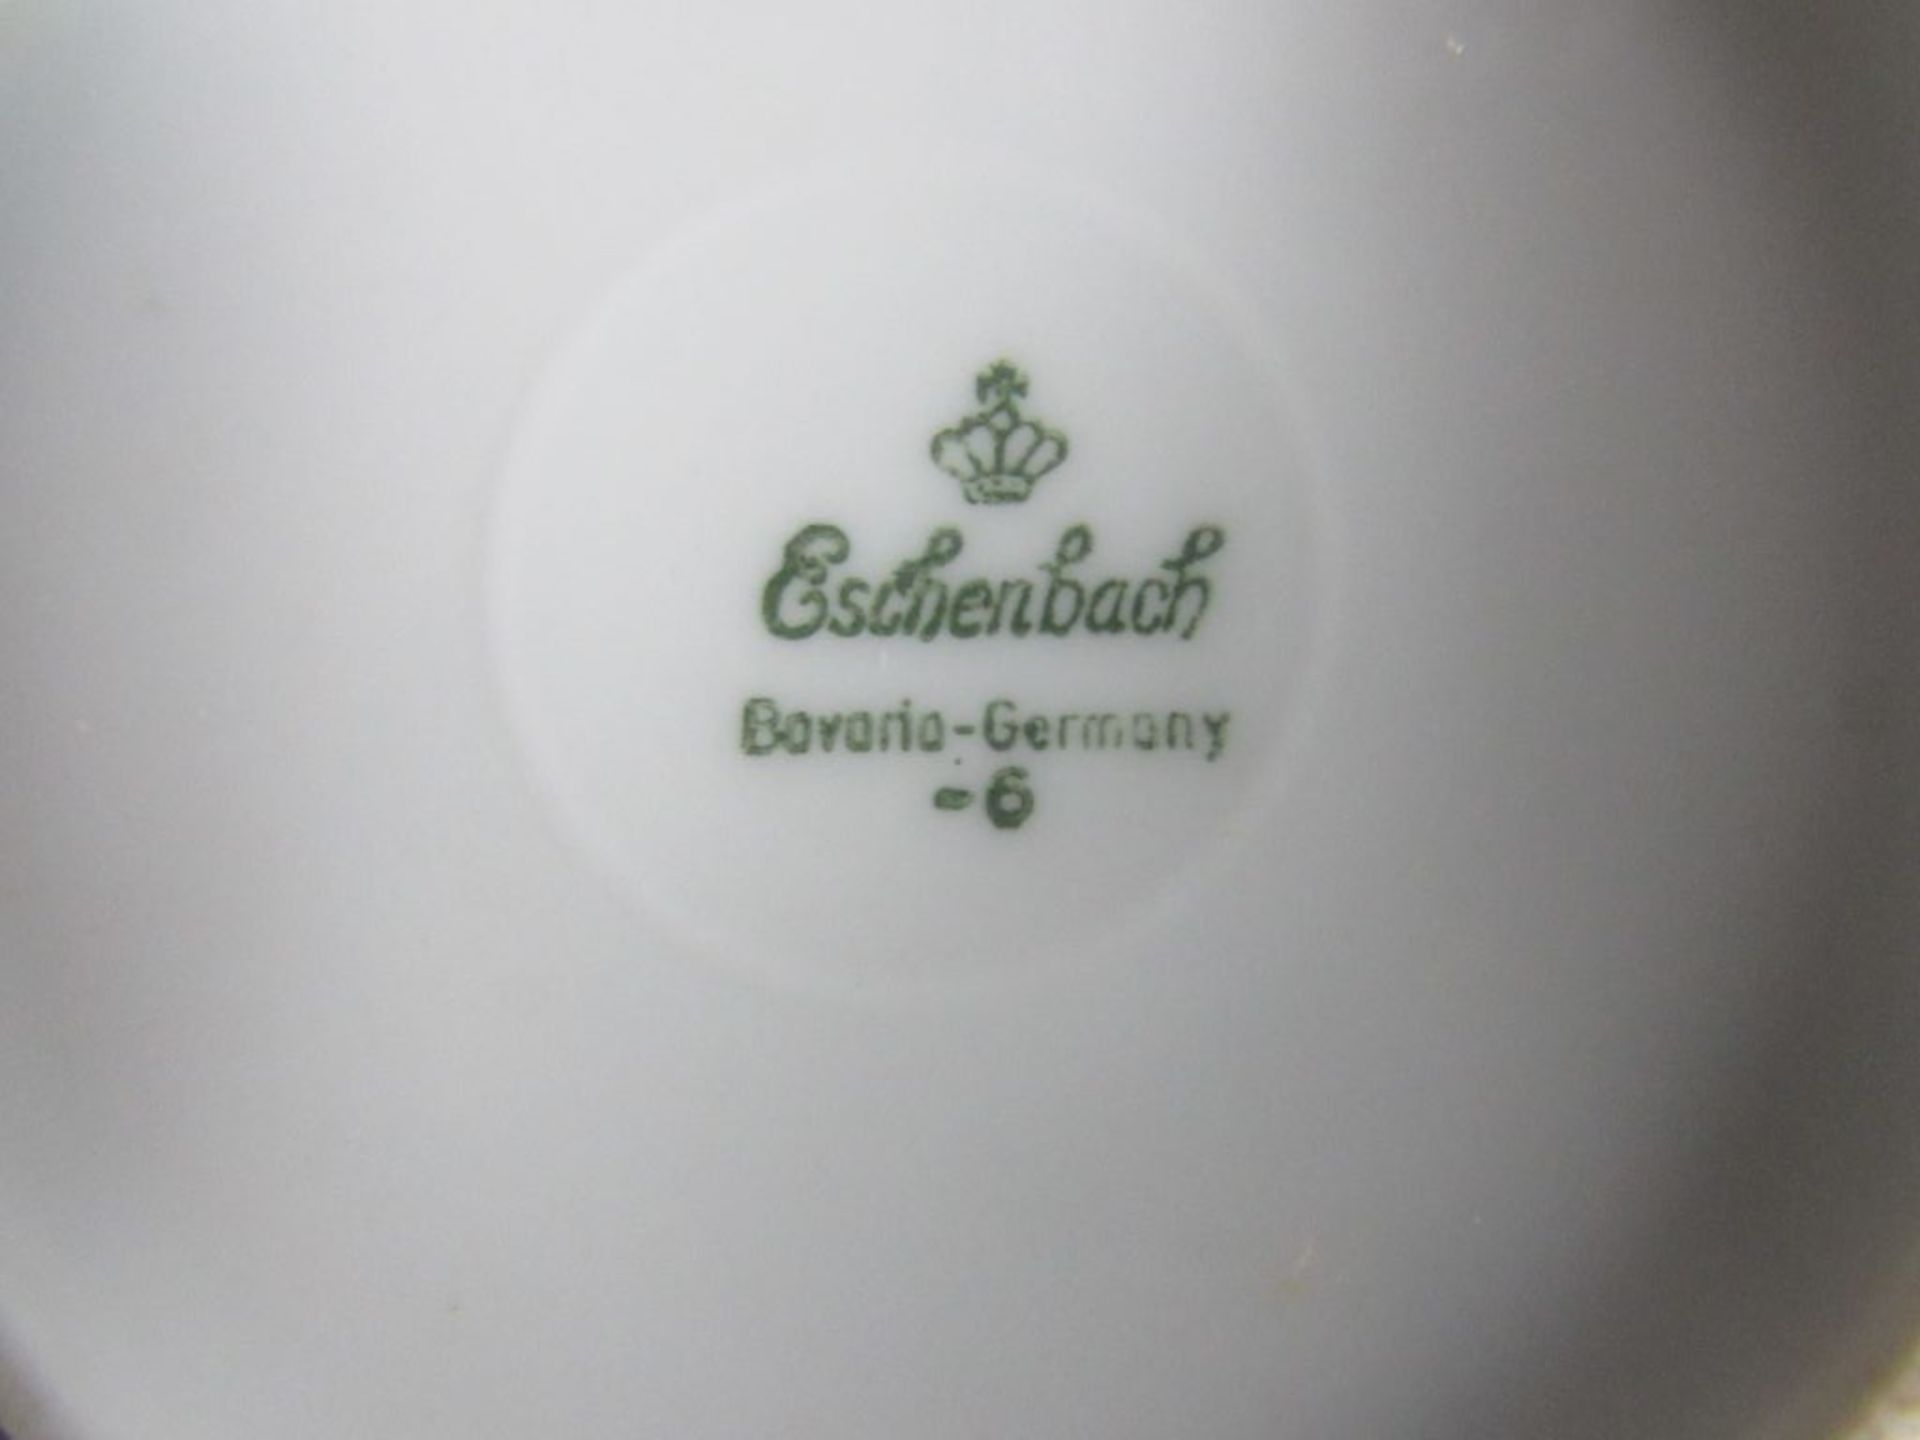 Speise und Kaffeservice Eschenbach lindgrünes Dekor 72 Teile Knauf von Terrine gebrochen - Image 5 of 5